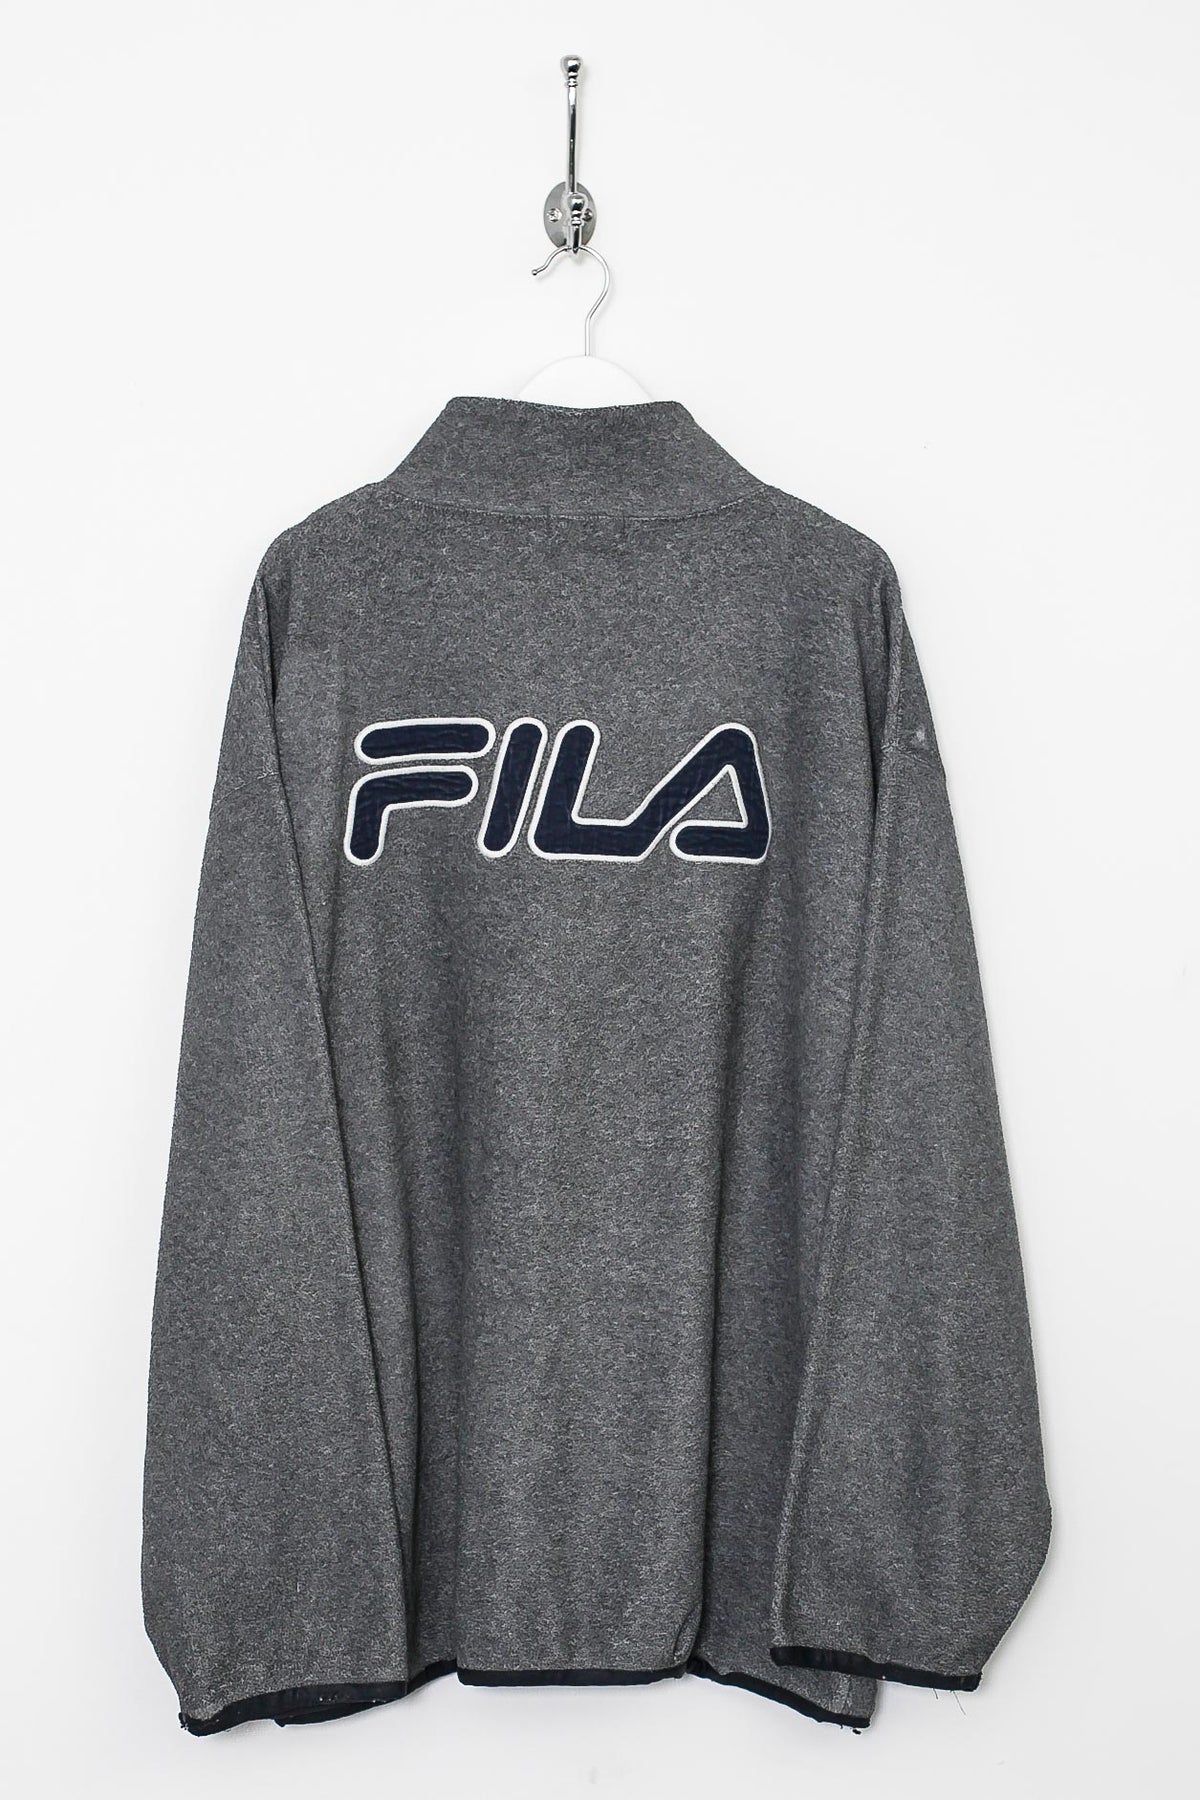 00s Fila 1/4 Zip Sweatshirt (XL)